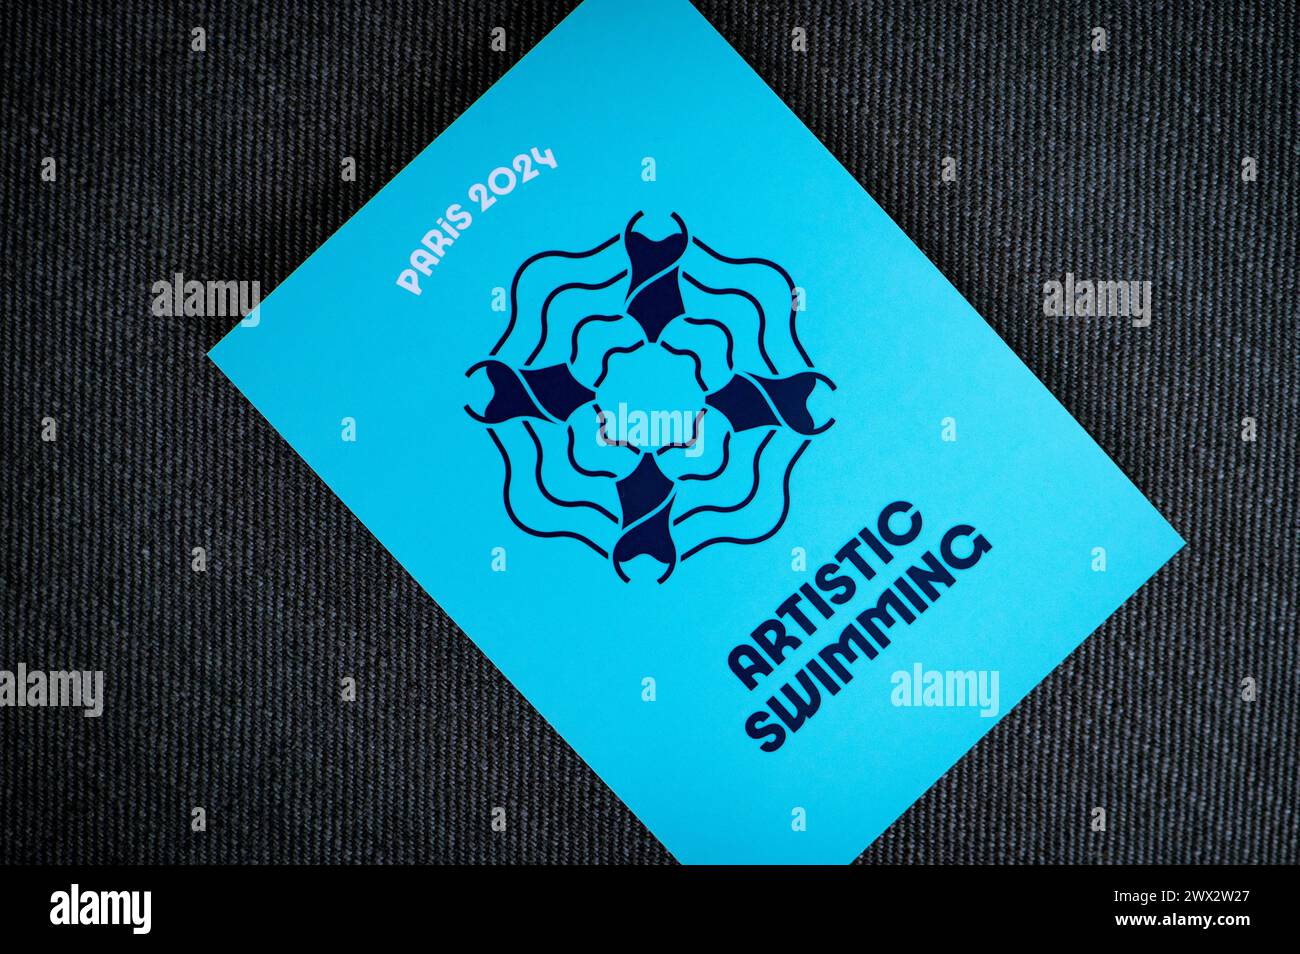 Pictogramme de natation artistique pour les jeux olympiques d'été de paris 2024. Icône officielle du sport aux jeux olympiques à Paris 24 Banque D'Images